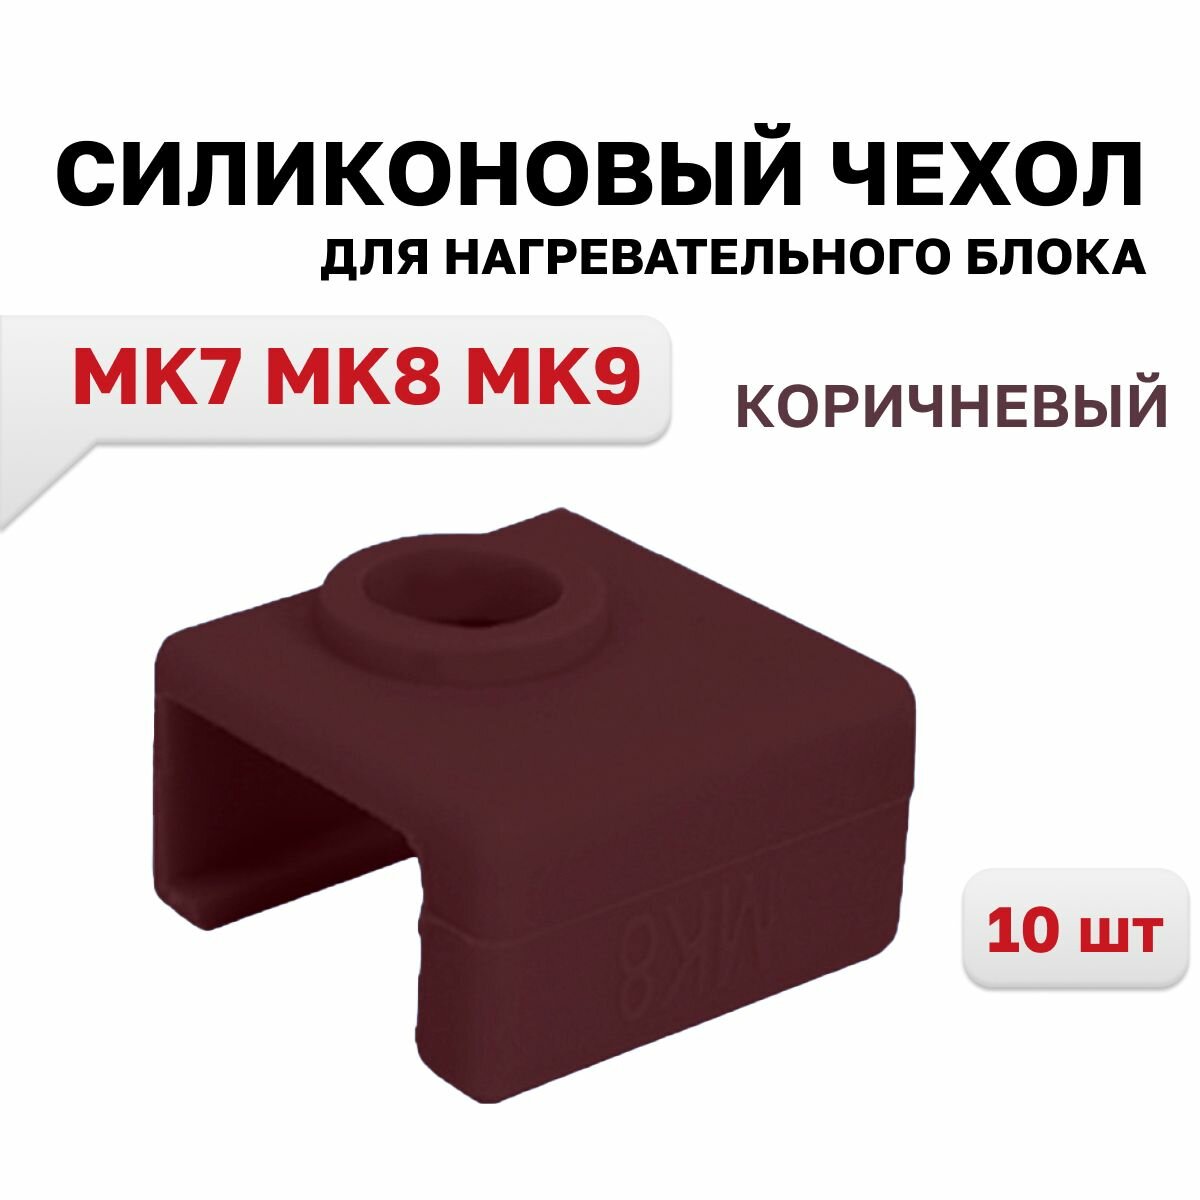 Силиконовый чехол для нагревательного блока MK7 MK8 MK9 коричневый 10 шт.